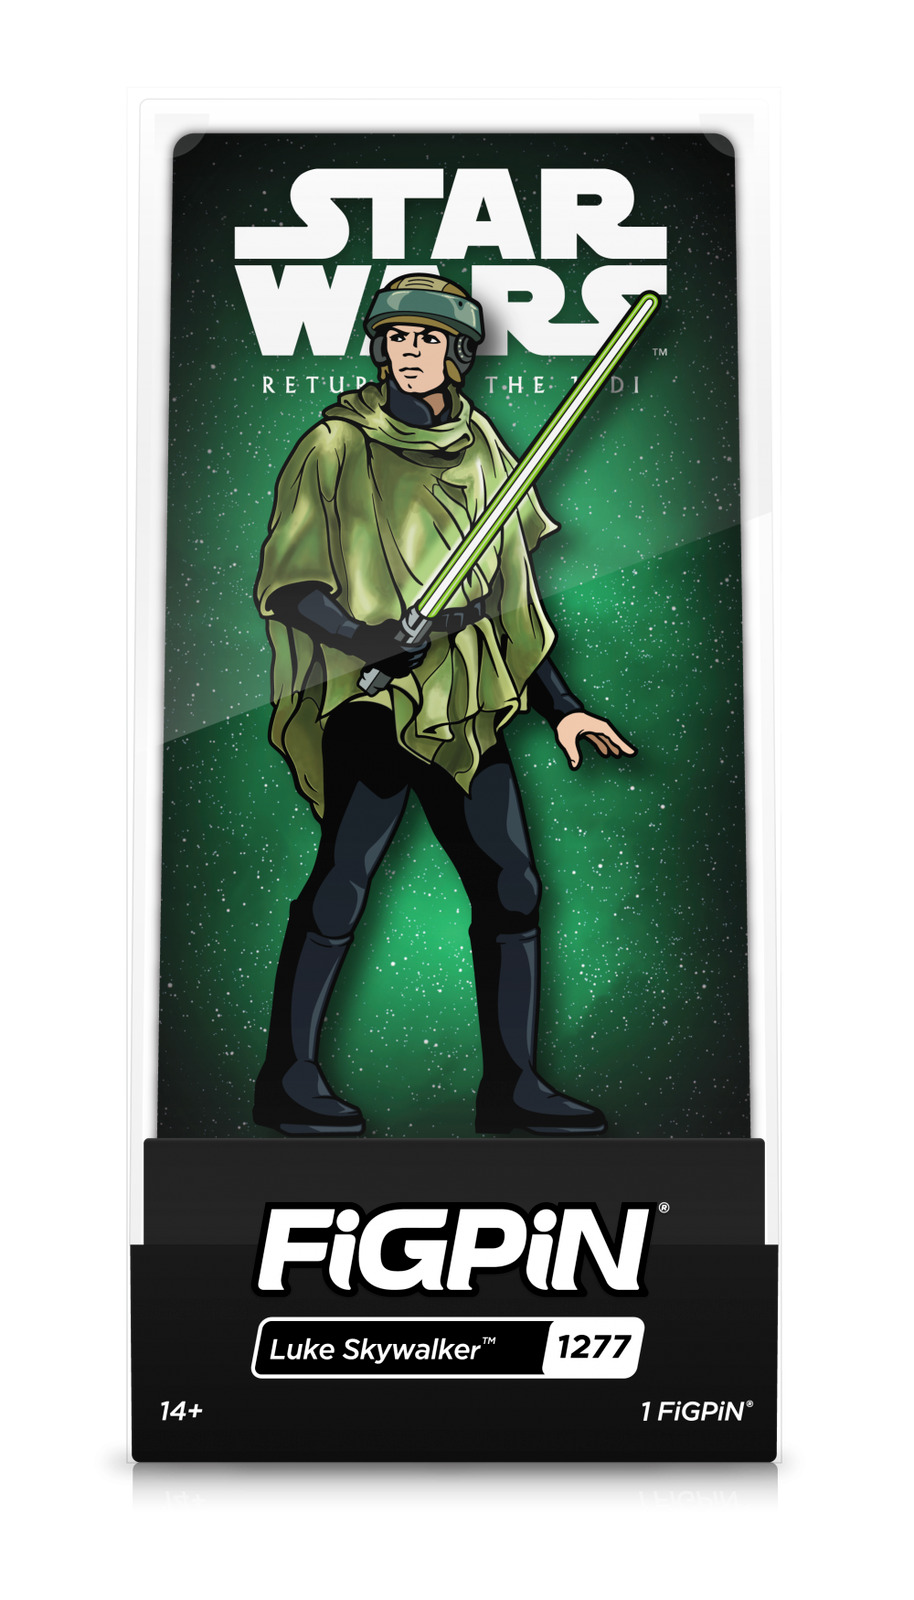 FiGPiN Luke Skywalker #1277 Star Wars Return of the Jedi